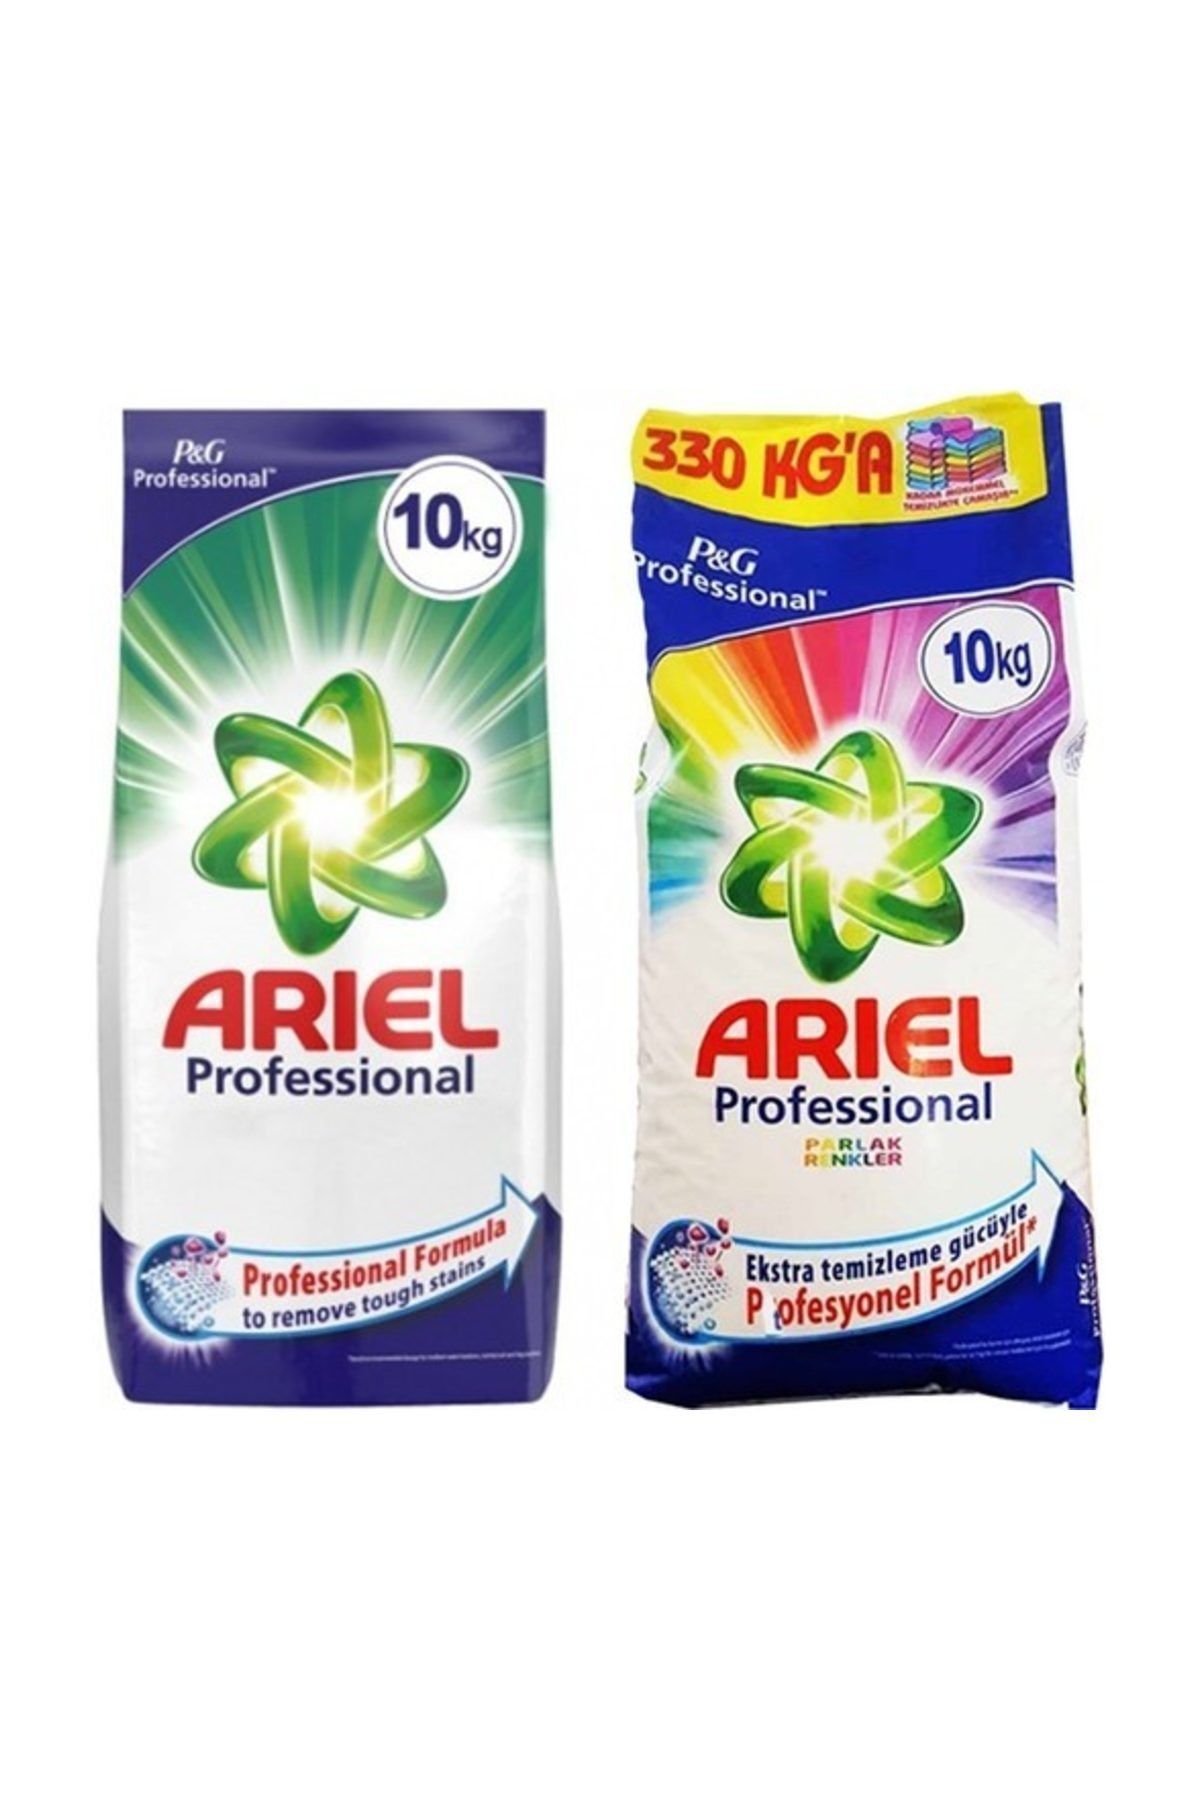 Ariel Professional Parlak Renkler Toz Deterjan 10 Kg +  Professional Toz Deterjan 10 Kg